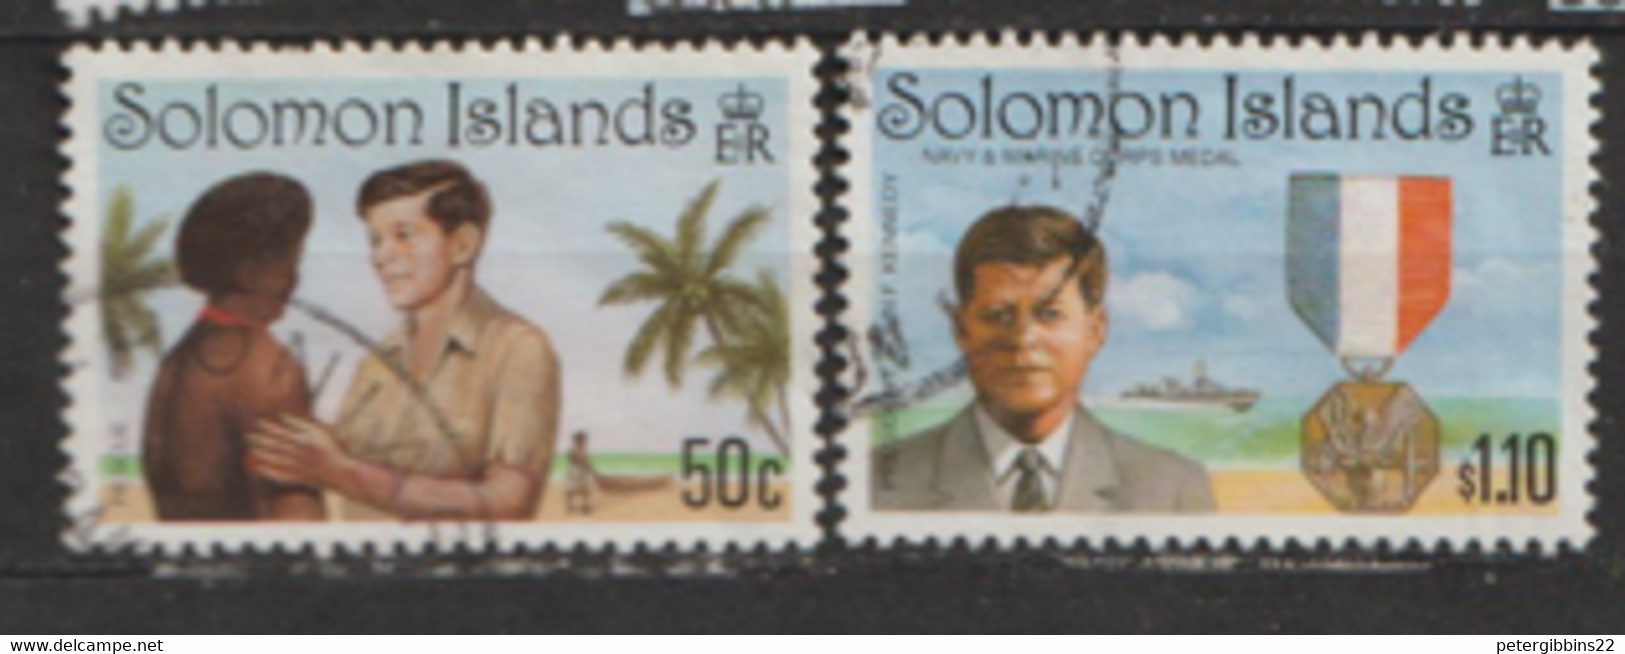 Solomon Islands  1993  SG 776-8  Kennedy  Fine Used - Solomon Islands